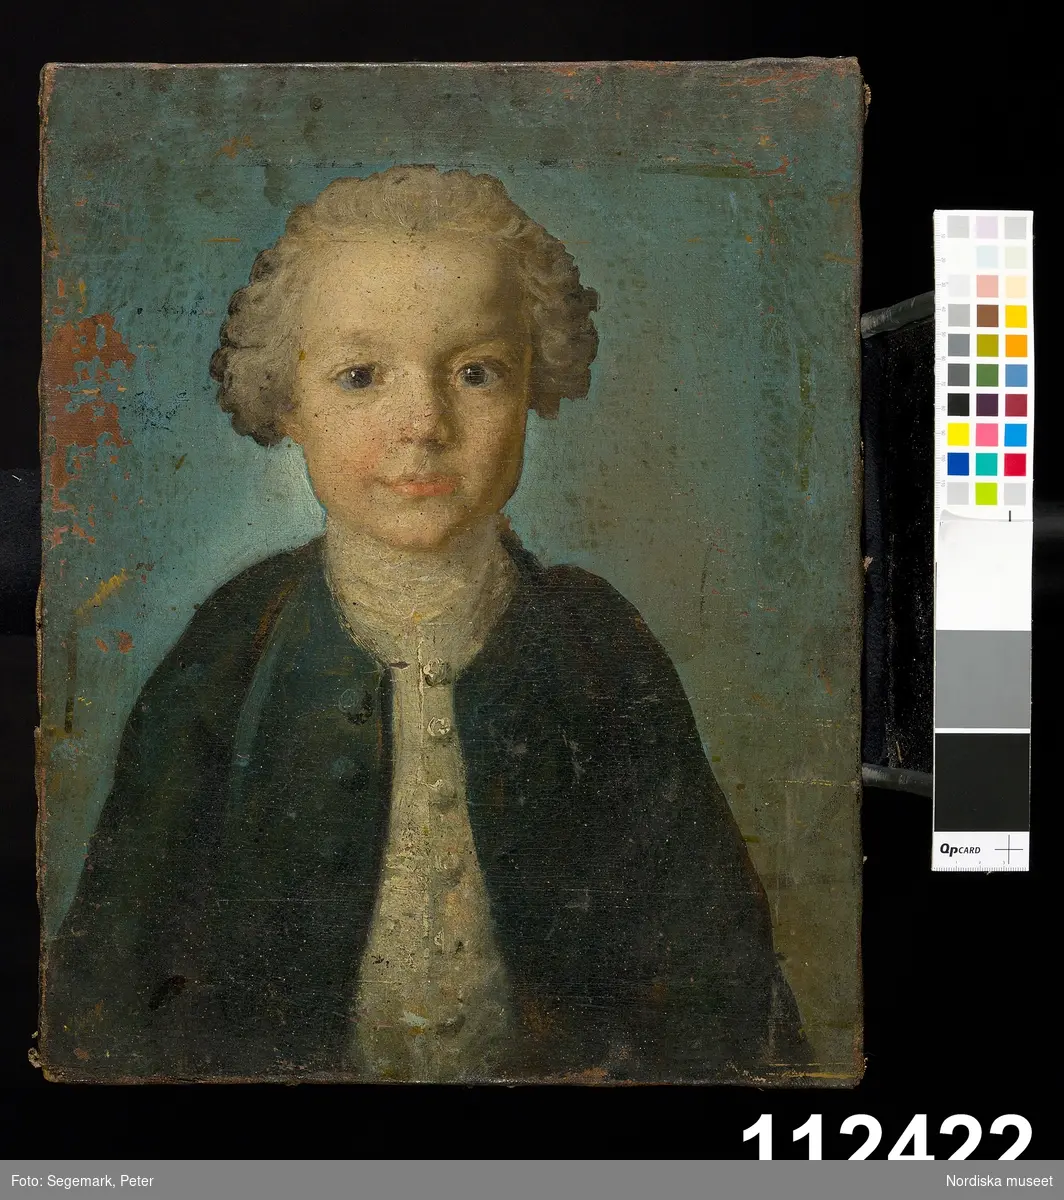 Gossporträtt föreställande Johan Malmstedt (1749-1780), bror till Anna Maria Lenngren, f. Malmstedt.
/Anna Arfvidsson Womack 2021-10-29